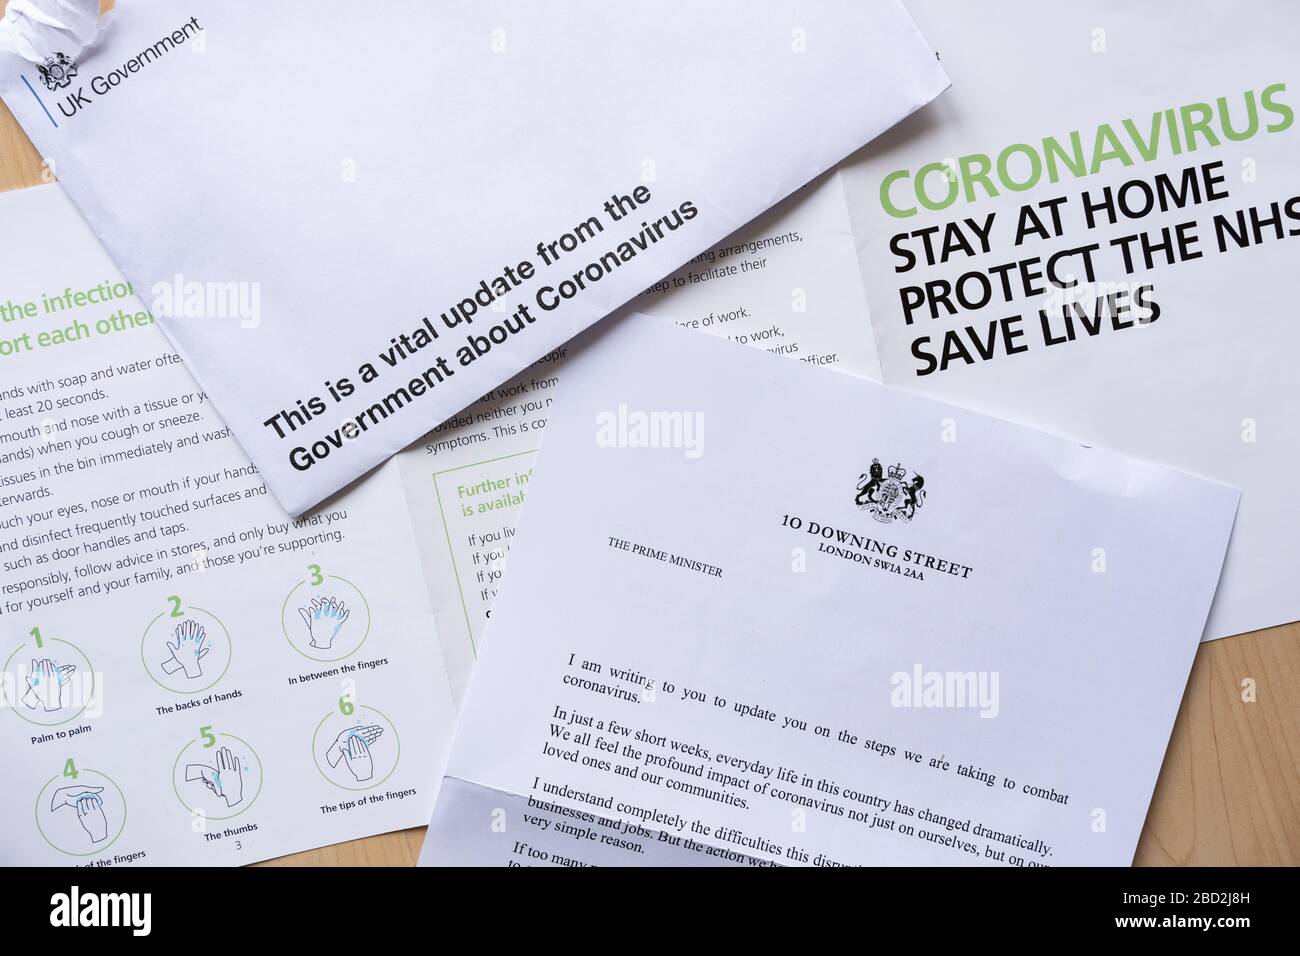 Offizielles Schreiben der HM-Regierung an alle britischen Haushalte als wichtiges Update für die Öffentlichkeit über Coronavirus Covid-19 während der Pandemie, April 2020 Stockfoto